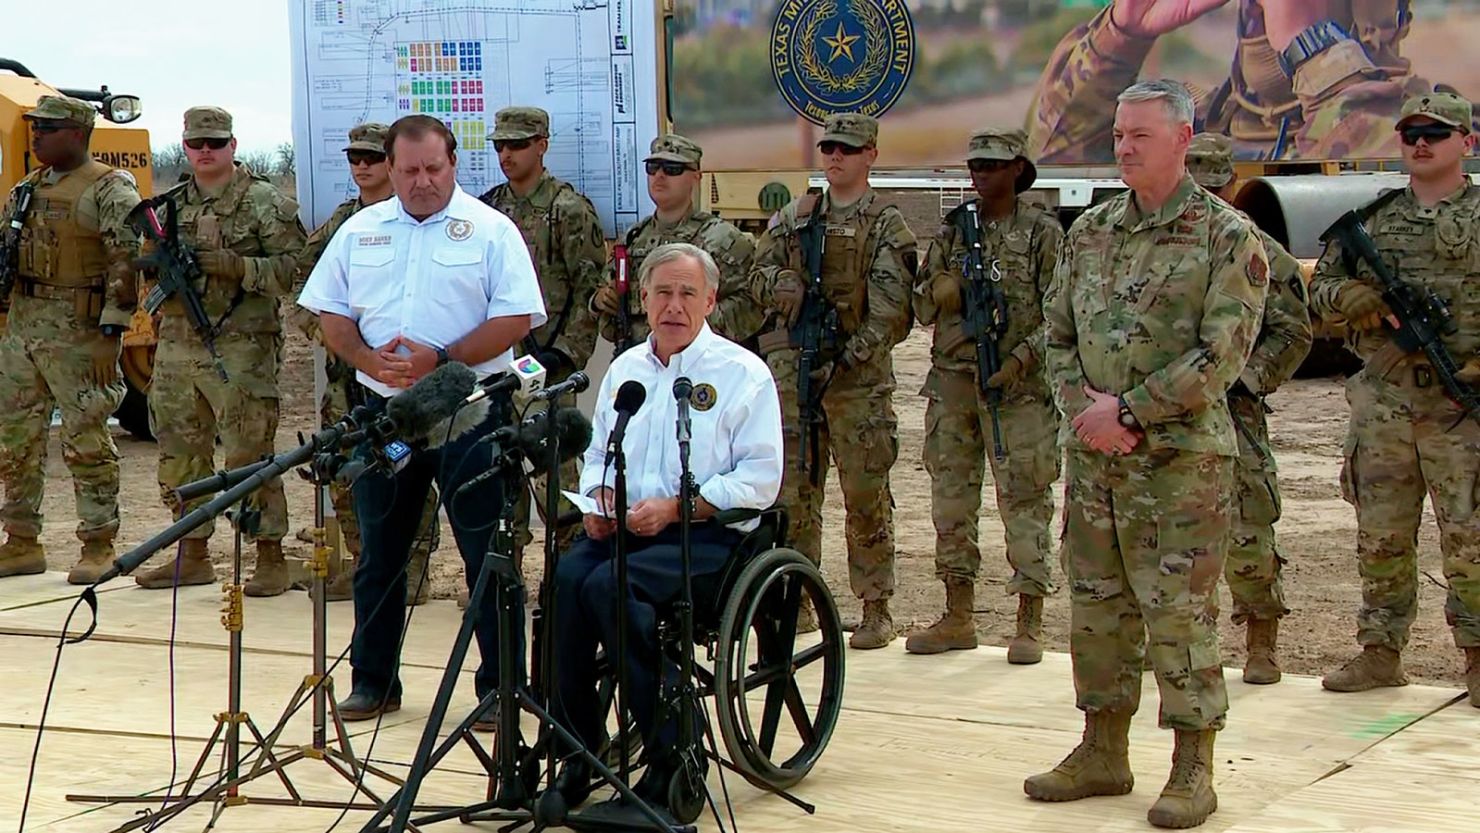 حاكم ولاية تكساس يبني قاعدة عسكرية قرب الحدود لردع المهاجرين